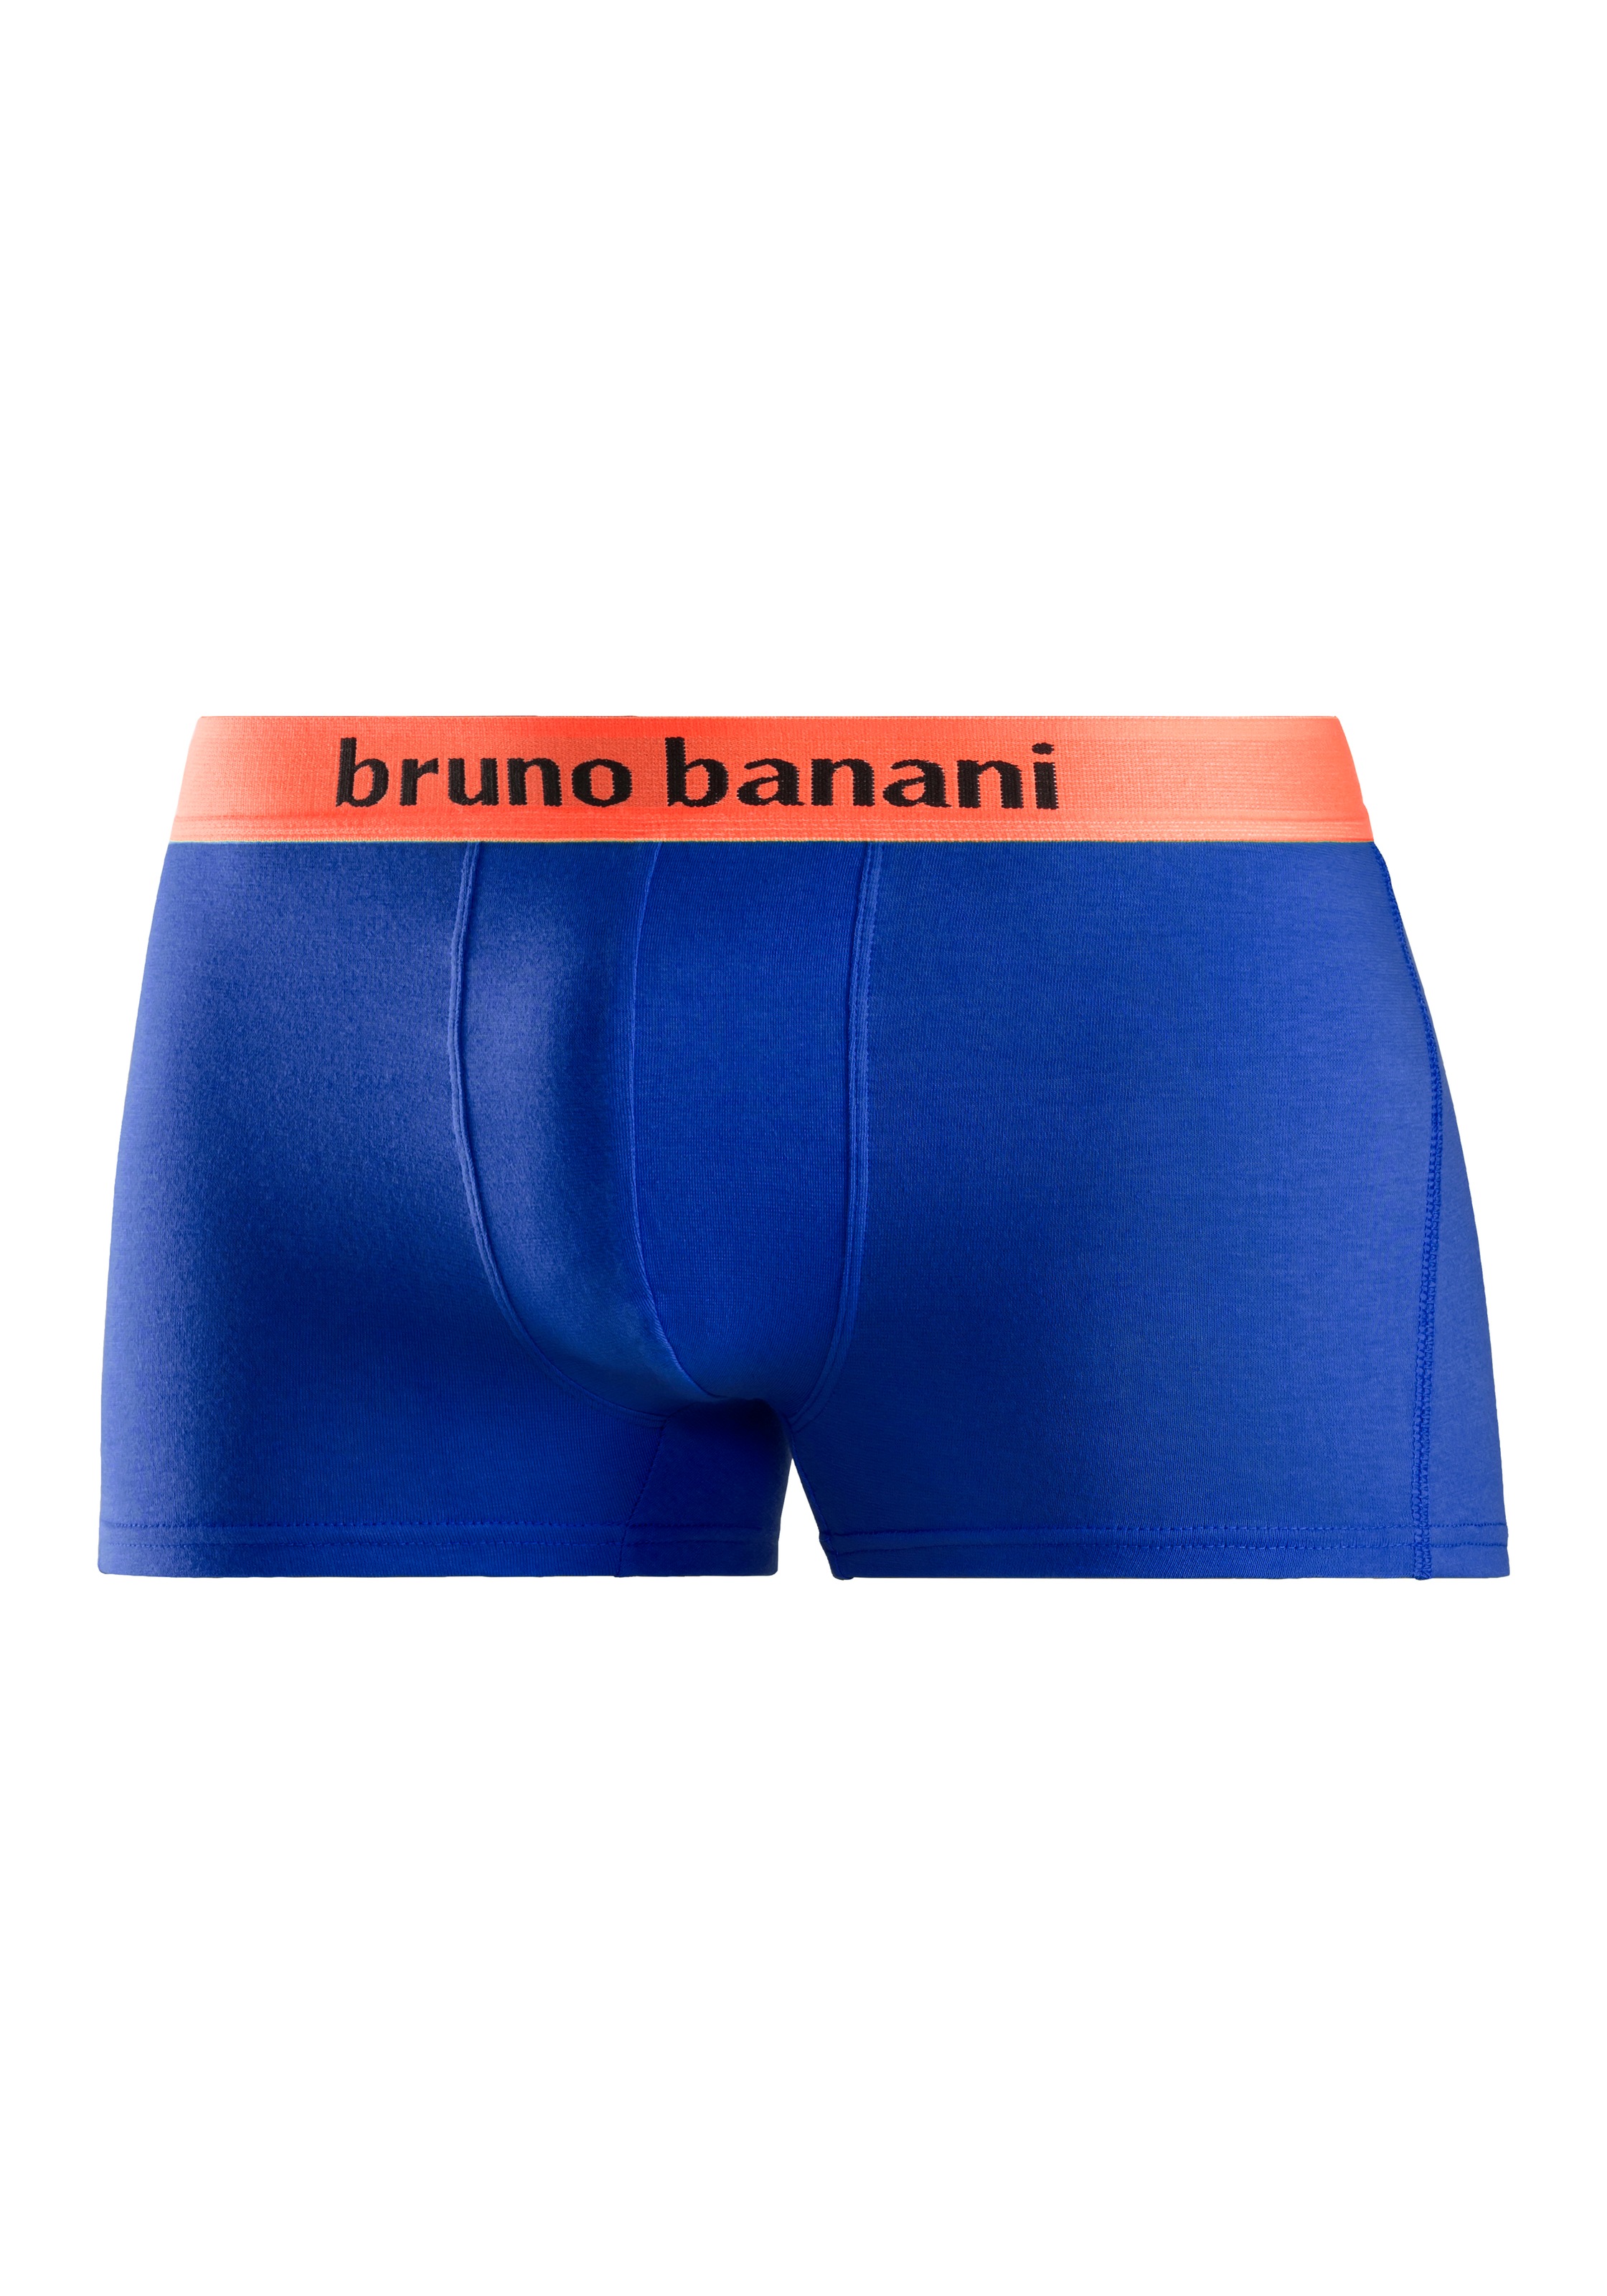 Angebotspreis Bruno Banani Boxer, auf versandkostenfrei am mit 4 farbigen Marken-Schriftzug Bündchen St.), (Packung